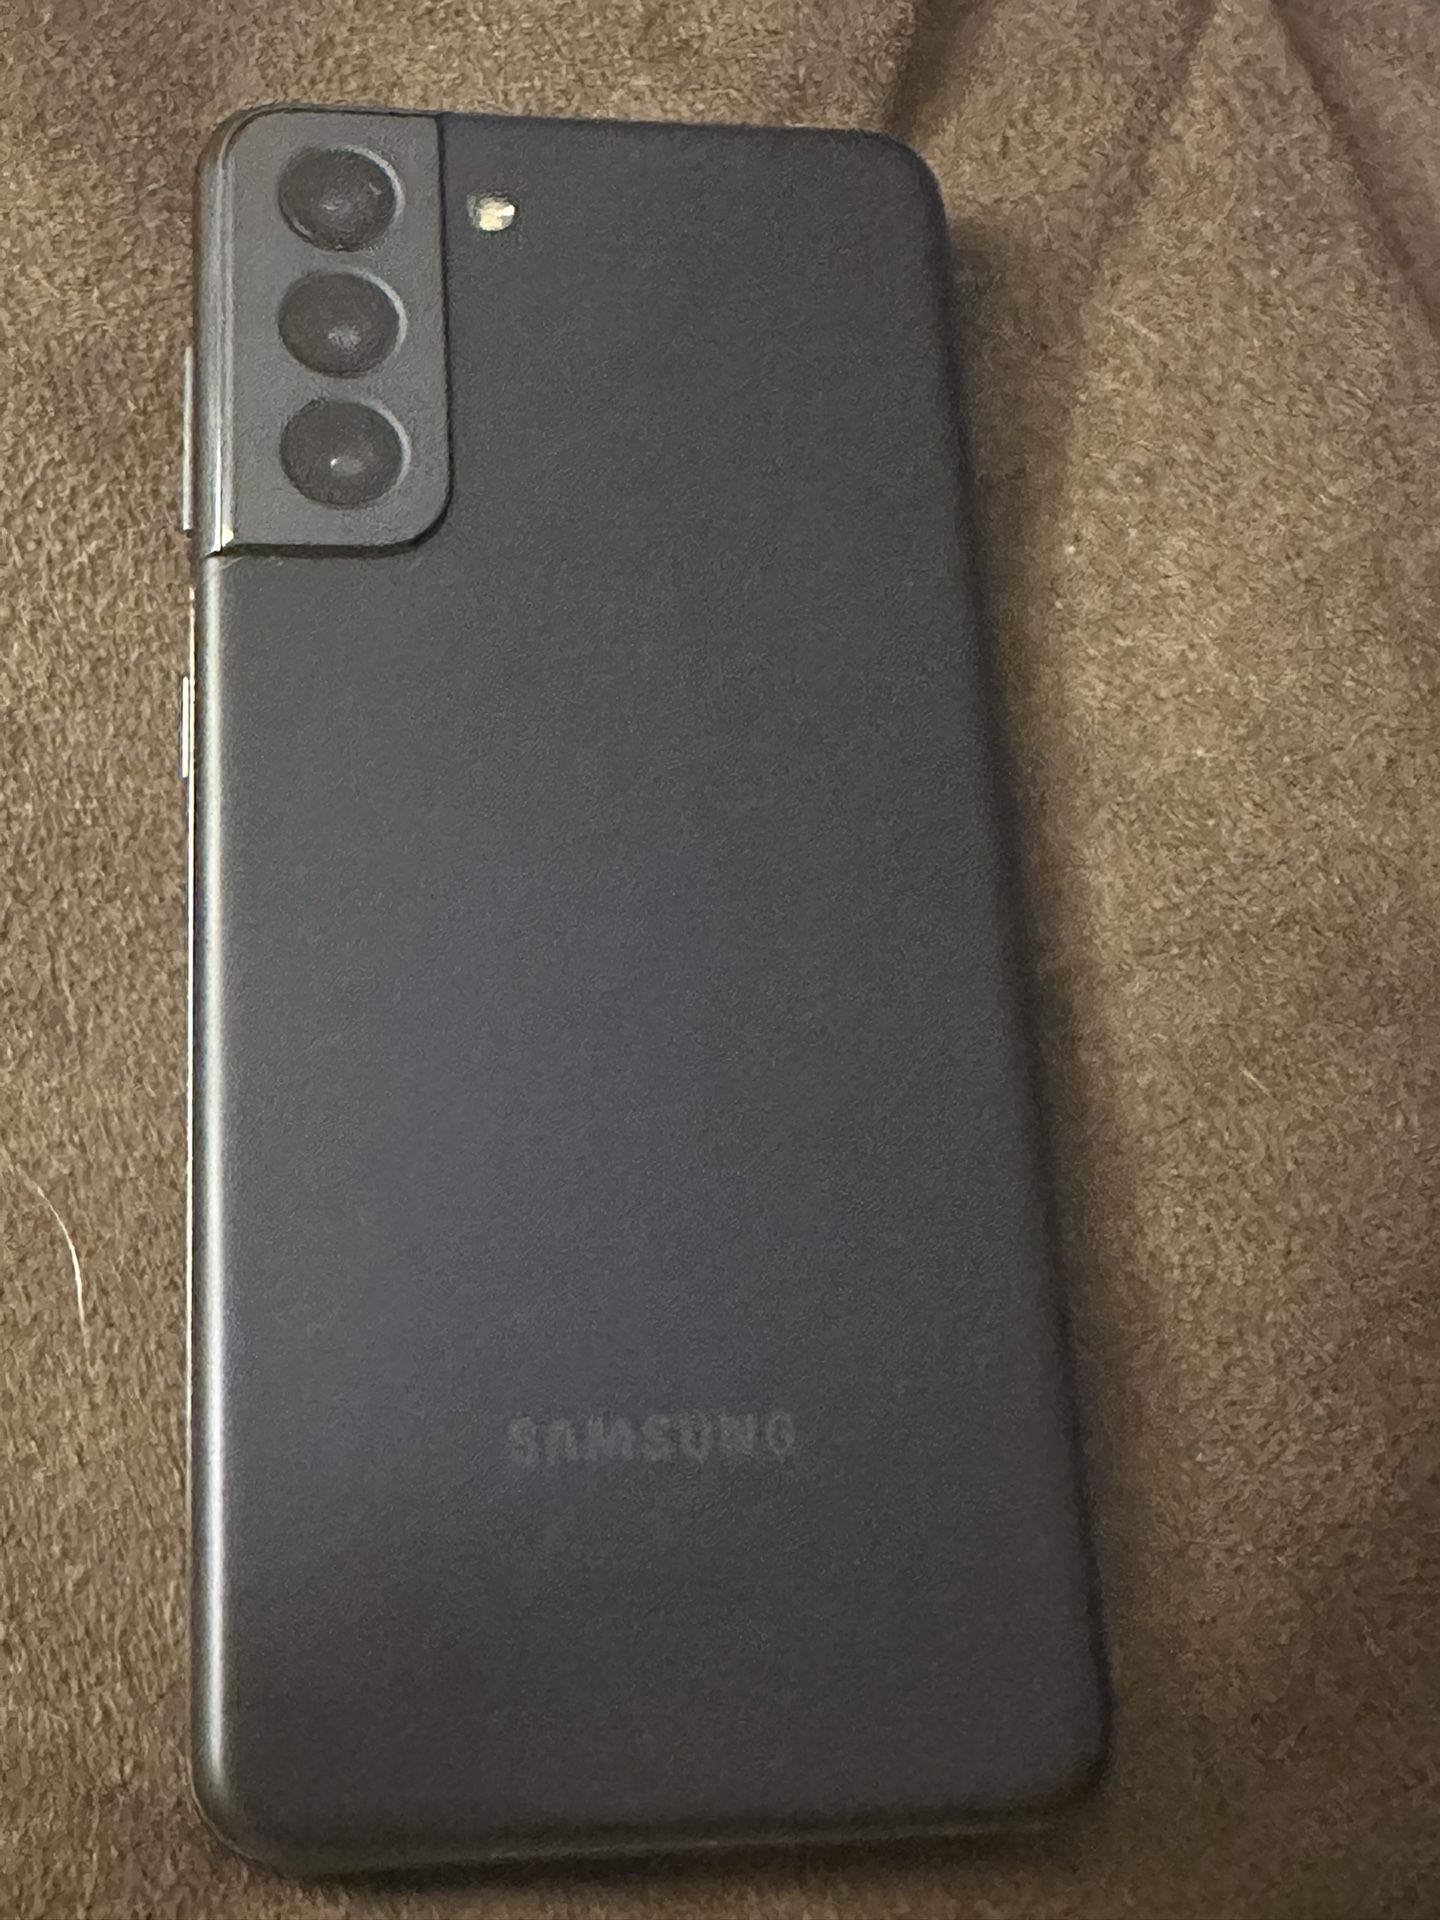 Samsung Galaxy 20 Unlocked 